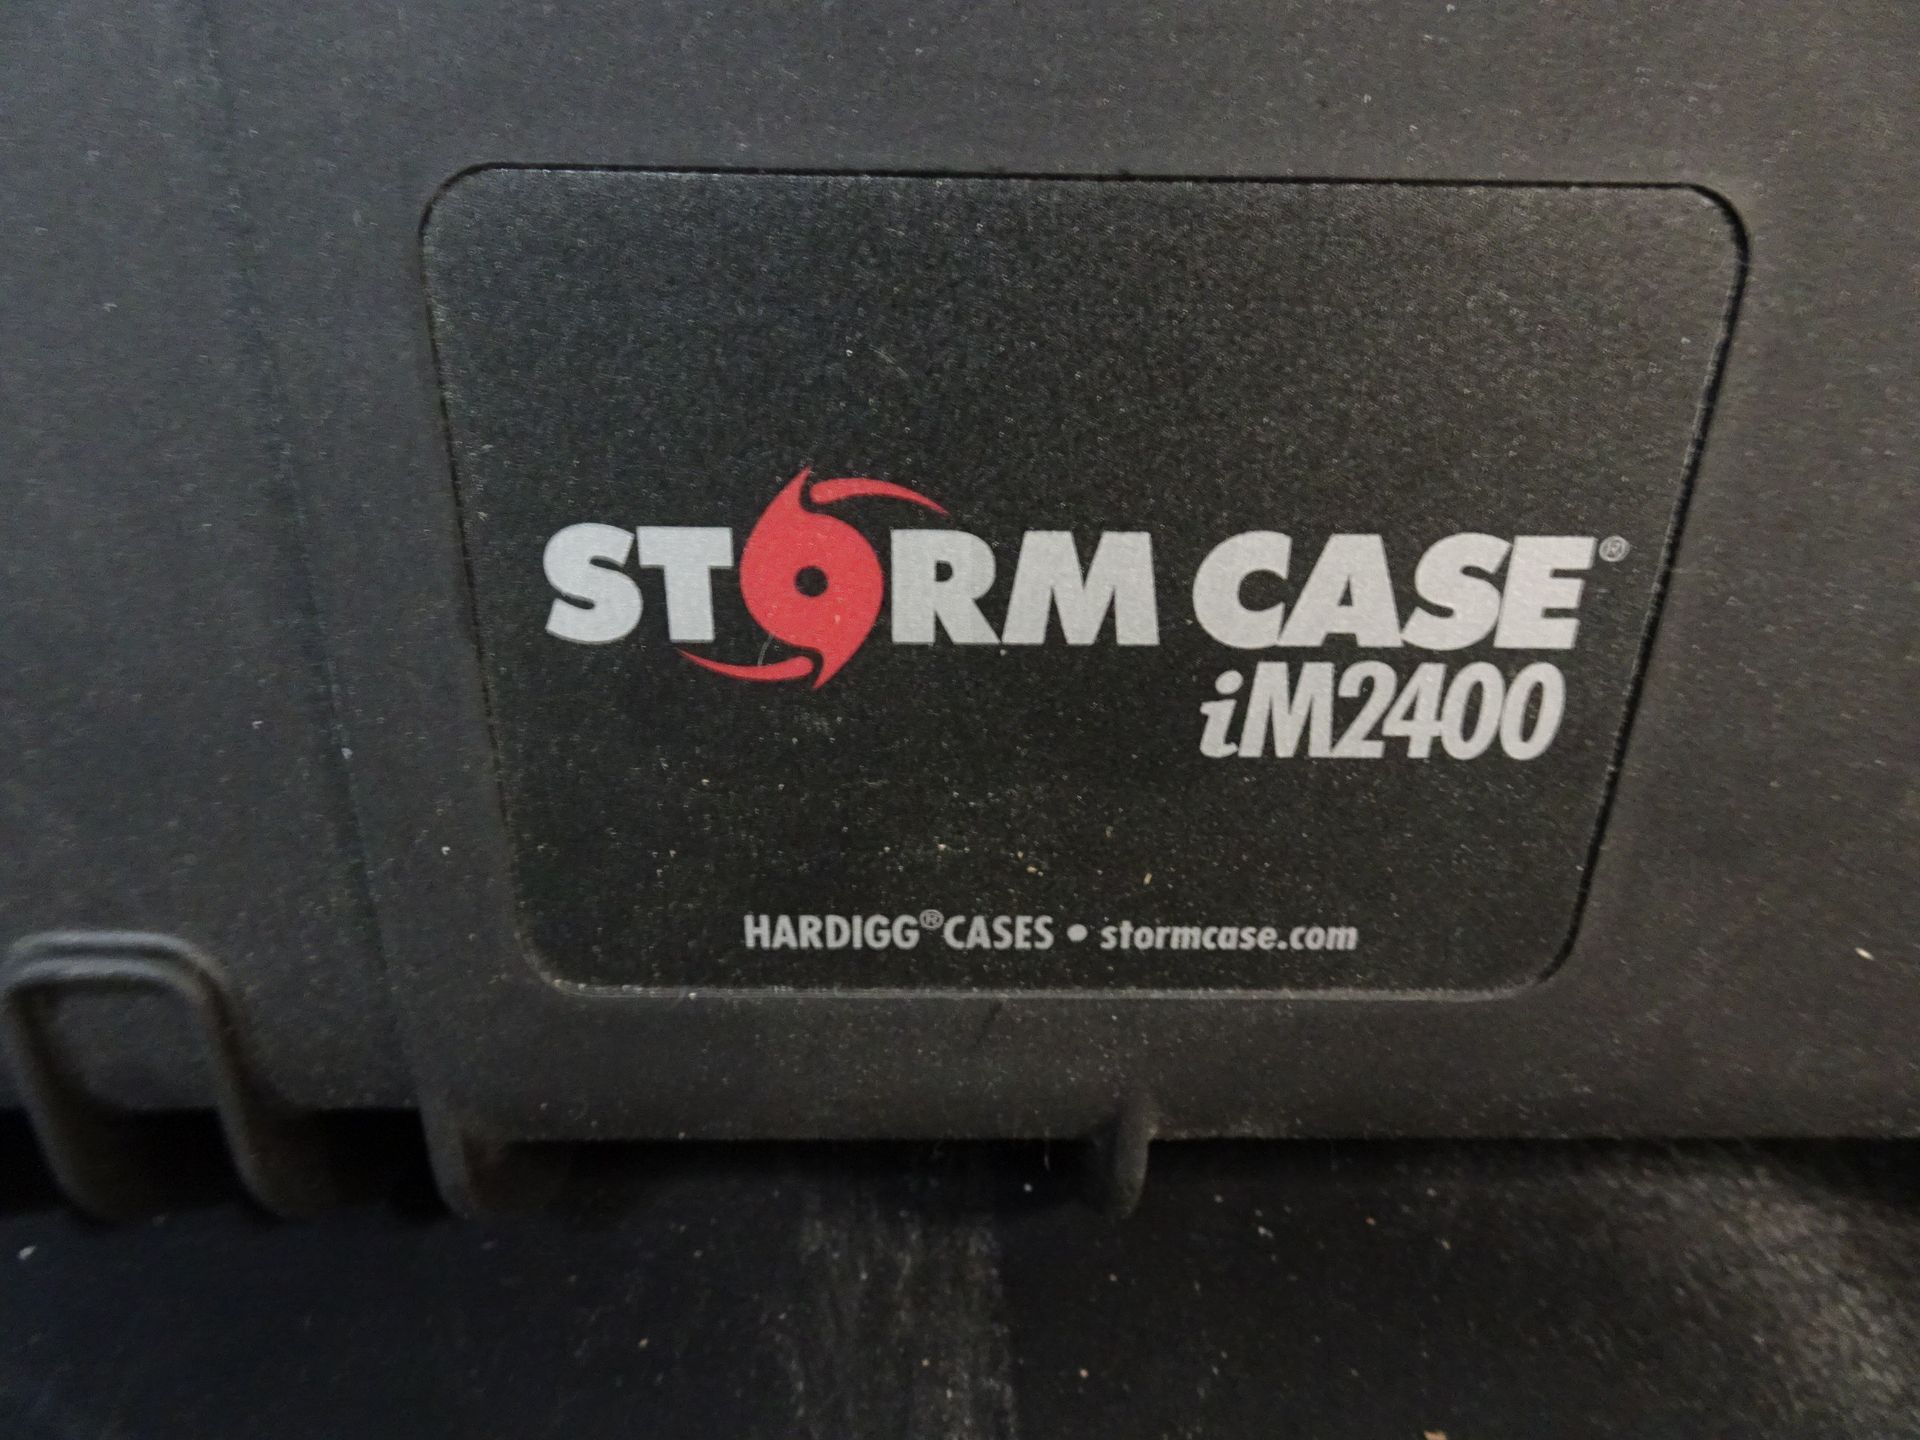 Hardigg Cases iM2400 Storm Case - Image 2 of 2